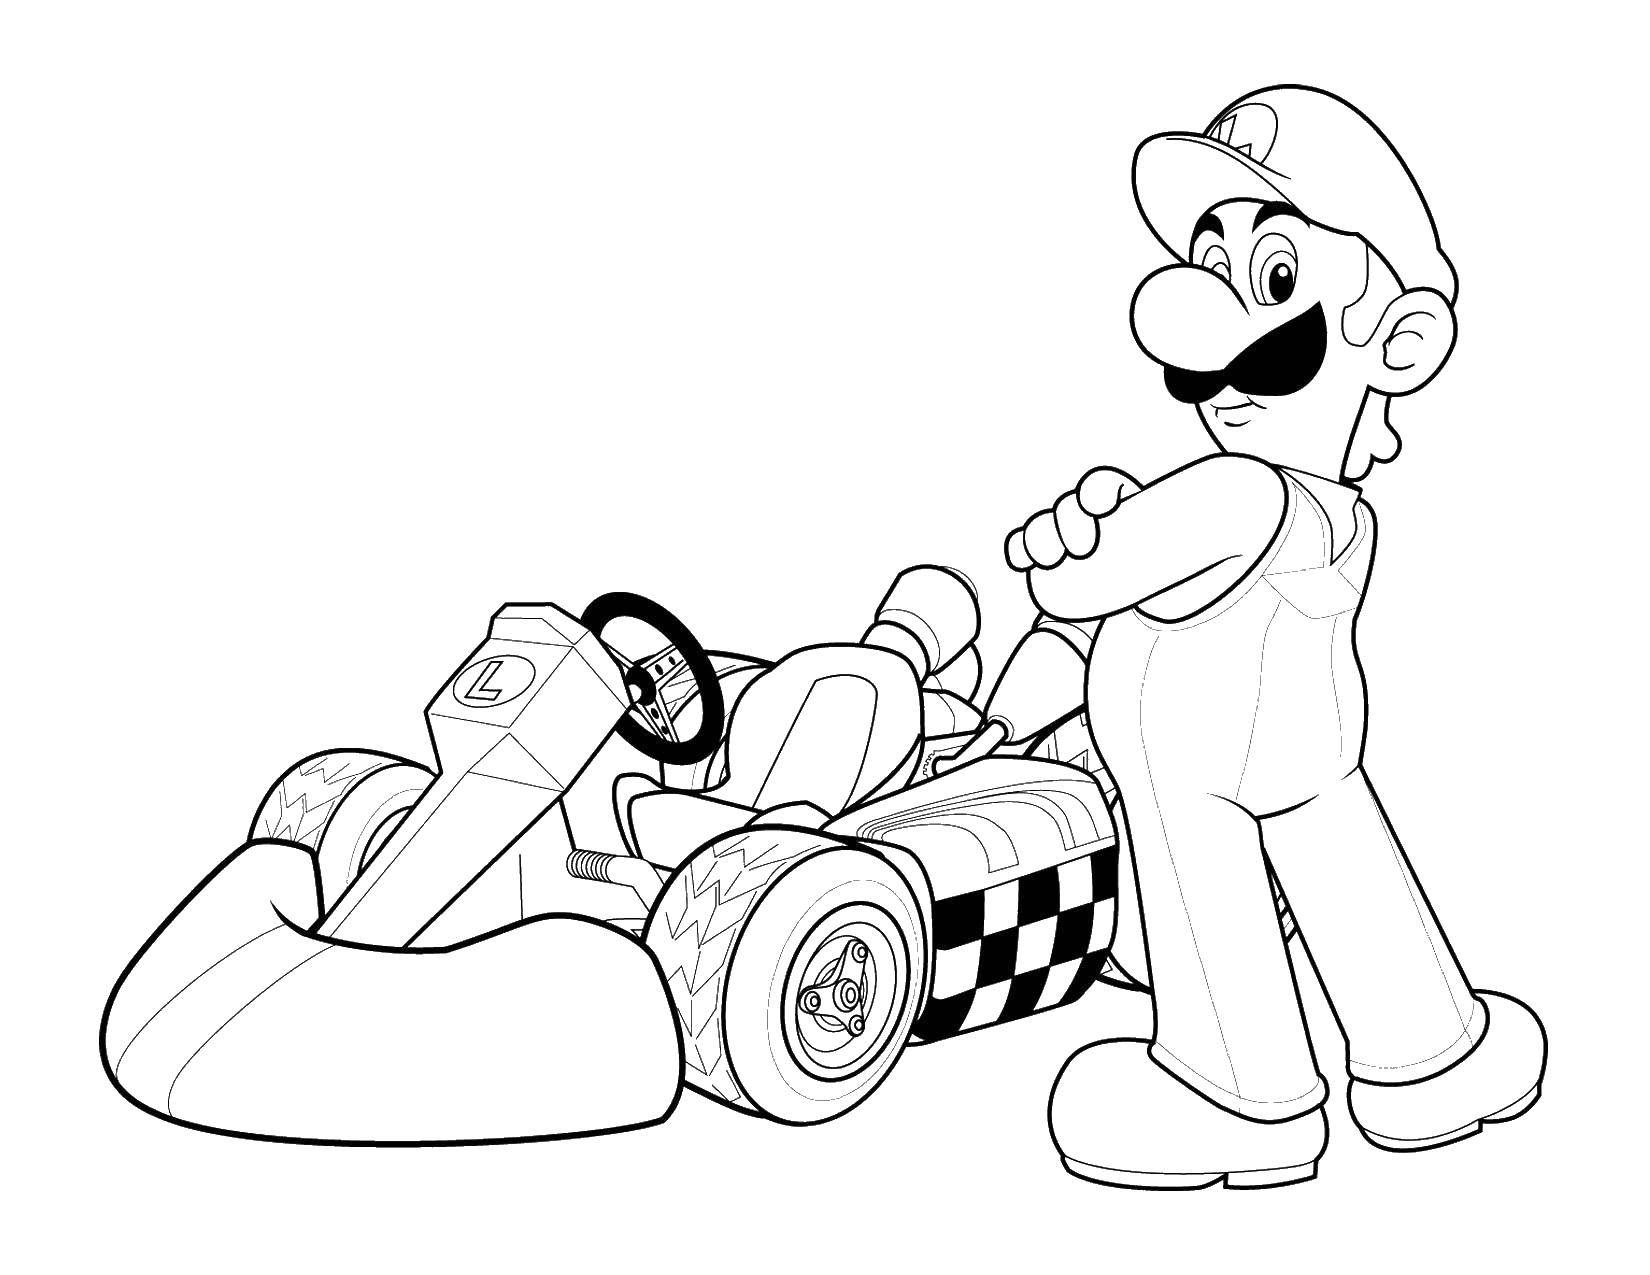 Название: Раскраска Супер марио на гоночной машине. Категория: Персонаж из игры. Теги: Супер Марио.